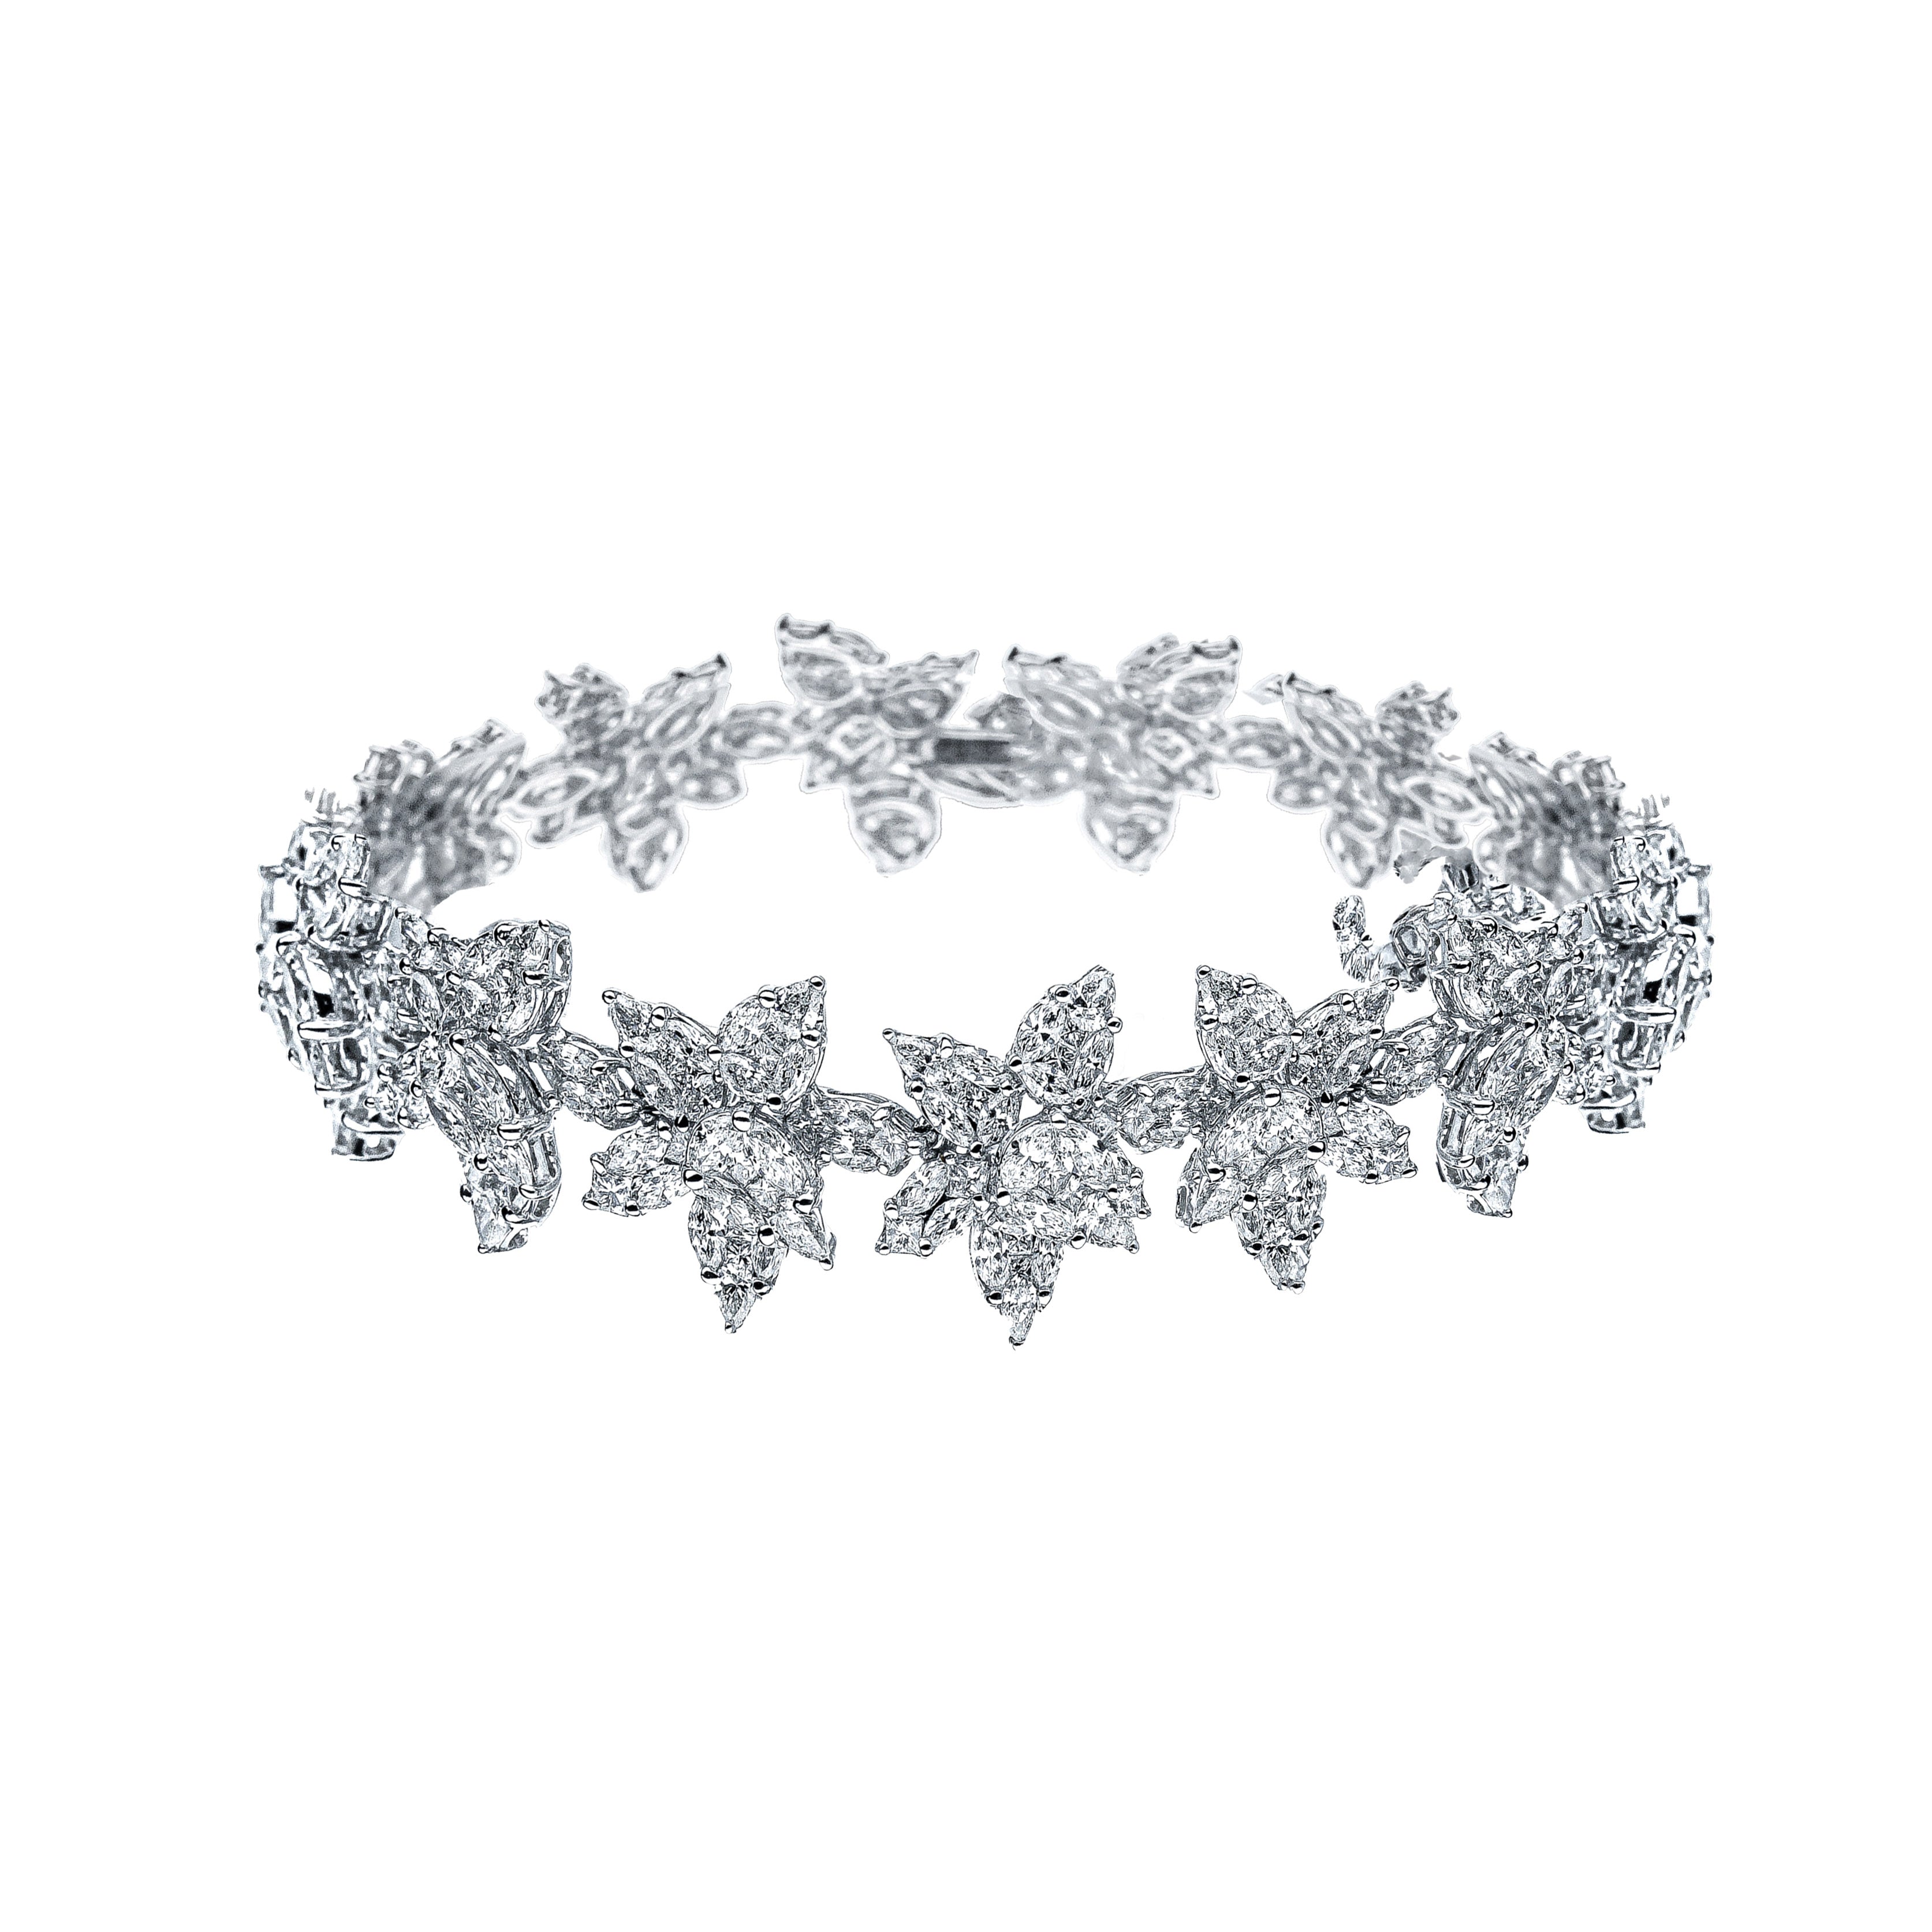 Diamond Tennis Bracelet With Princess Cut Diamonds – HANIKEN JEWELERS  NEW-YORK